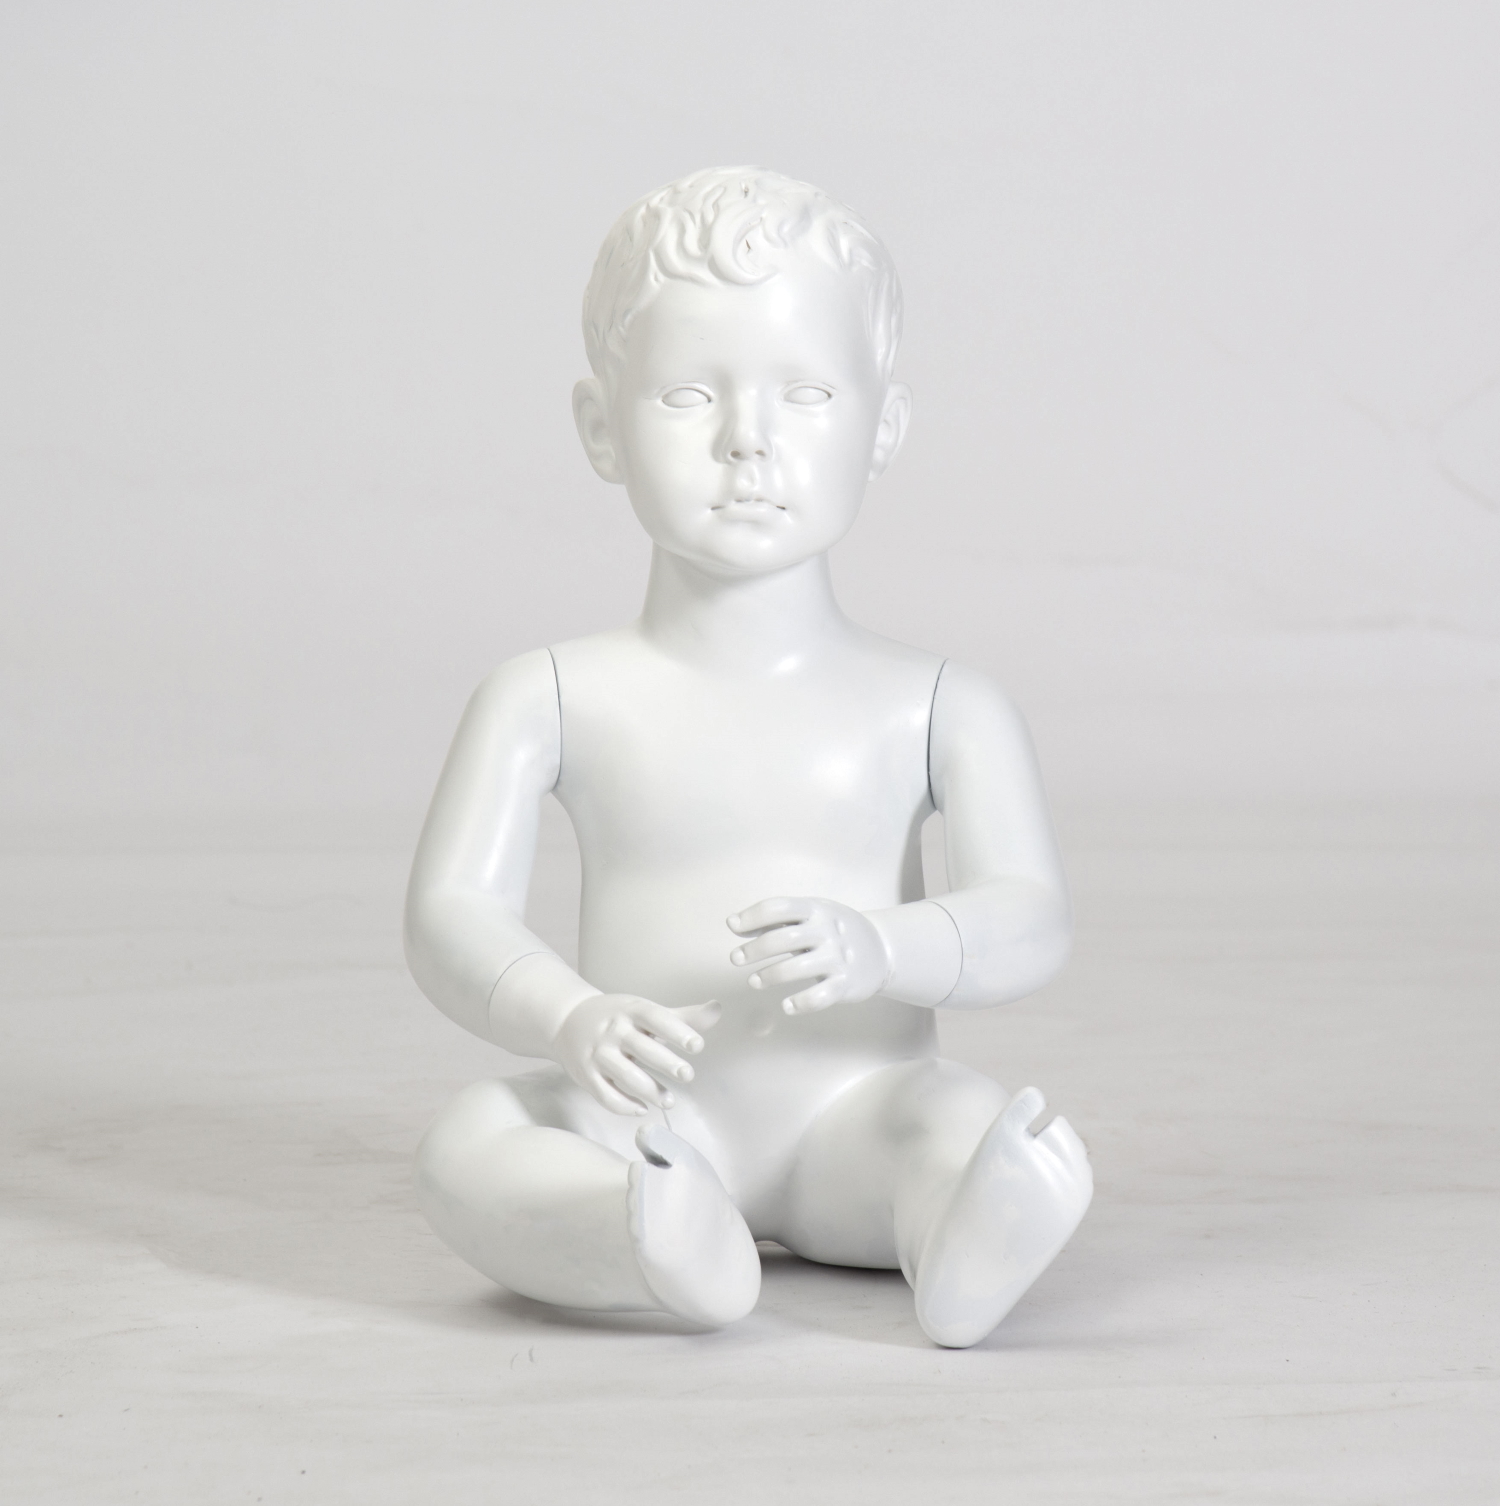 Schaufensterfigur "Bodysculpt" MOS2 Baby, 1 Jahr sitzend weiß